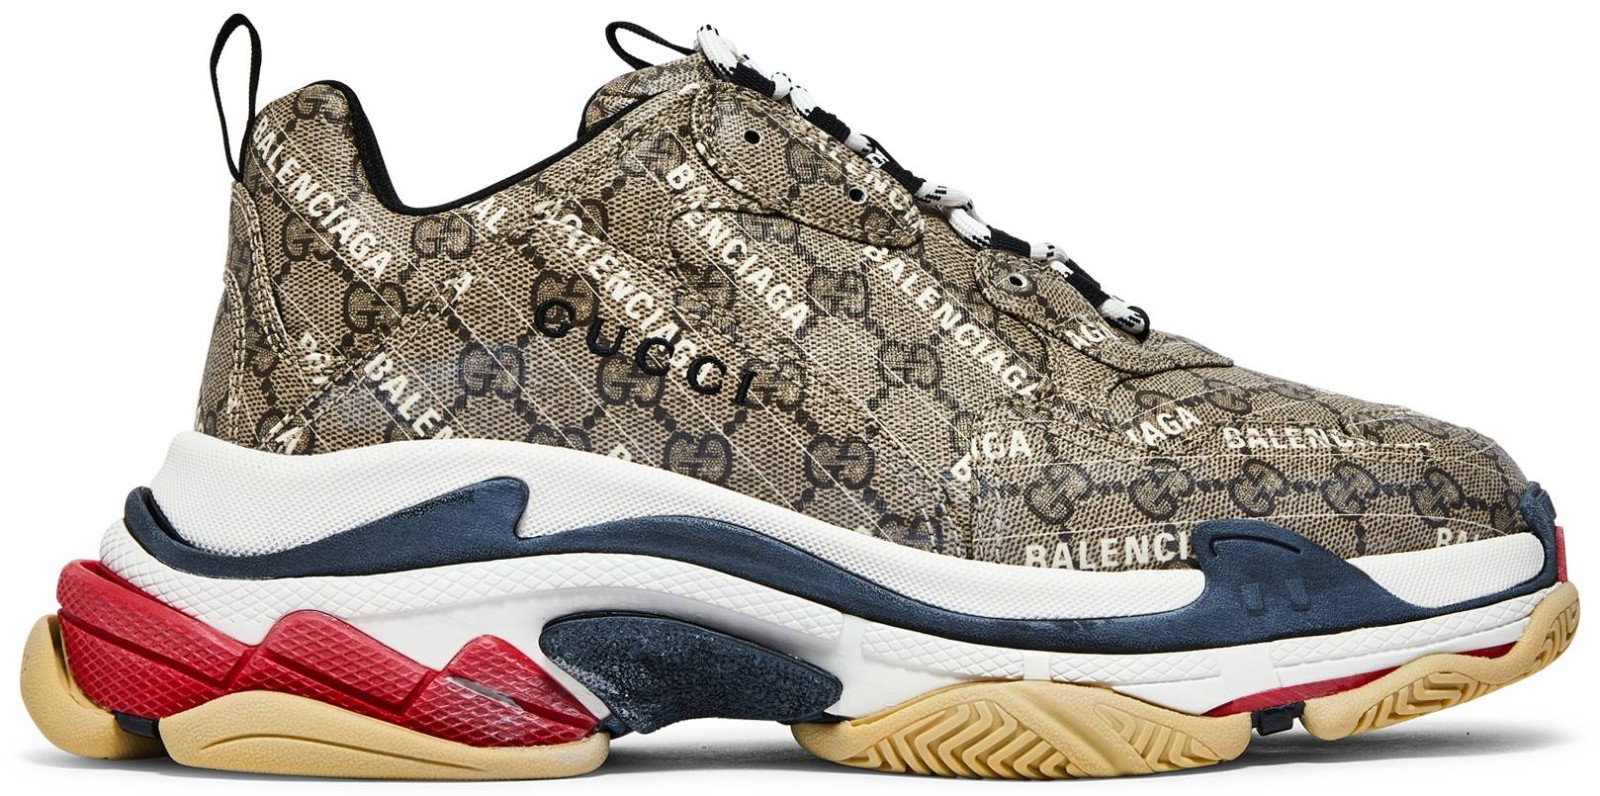 Gucci x Balenciaga làm sống lại đôi giày thể thao Triple S